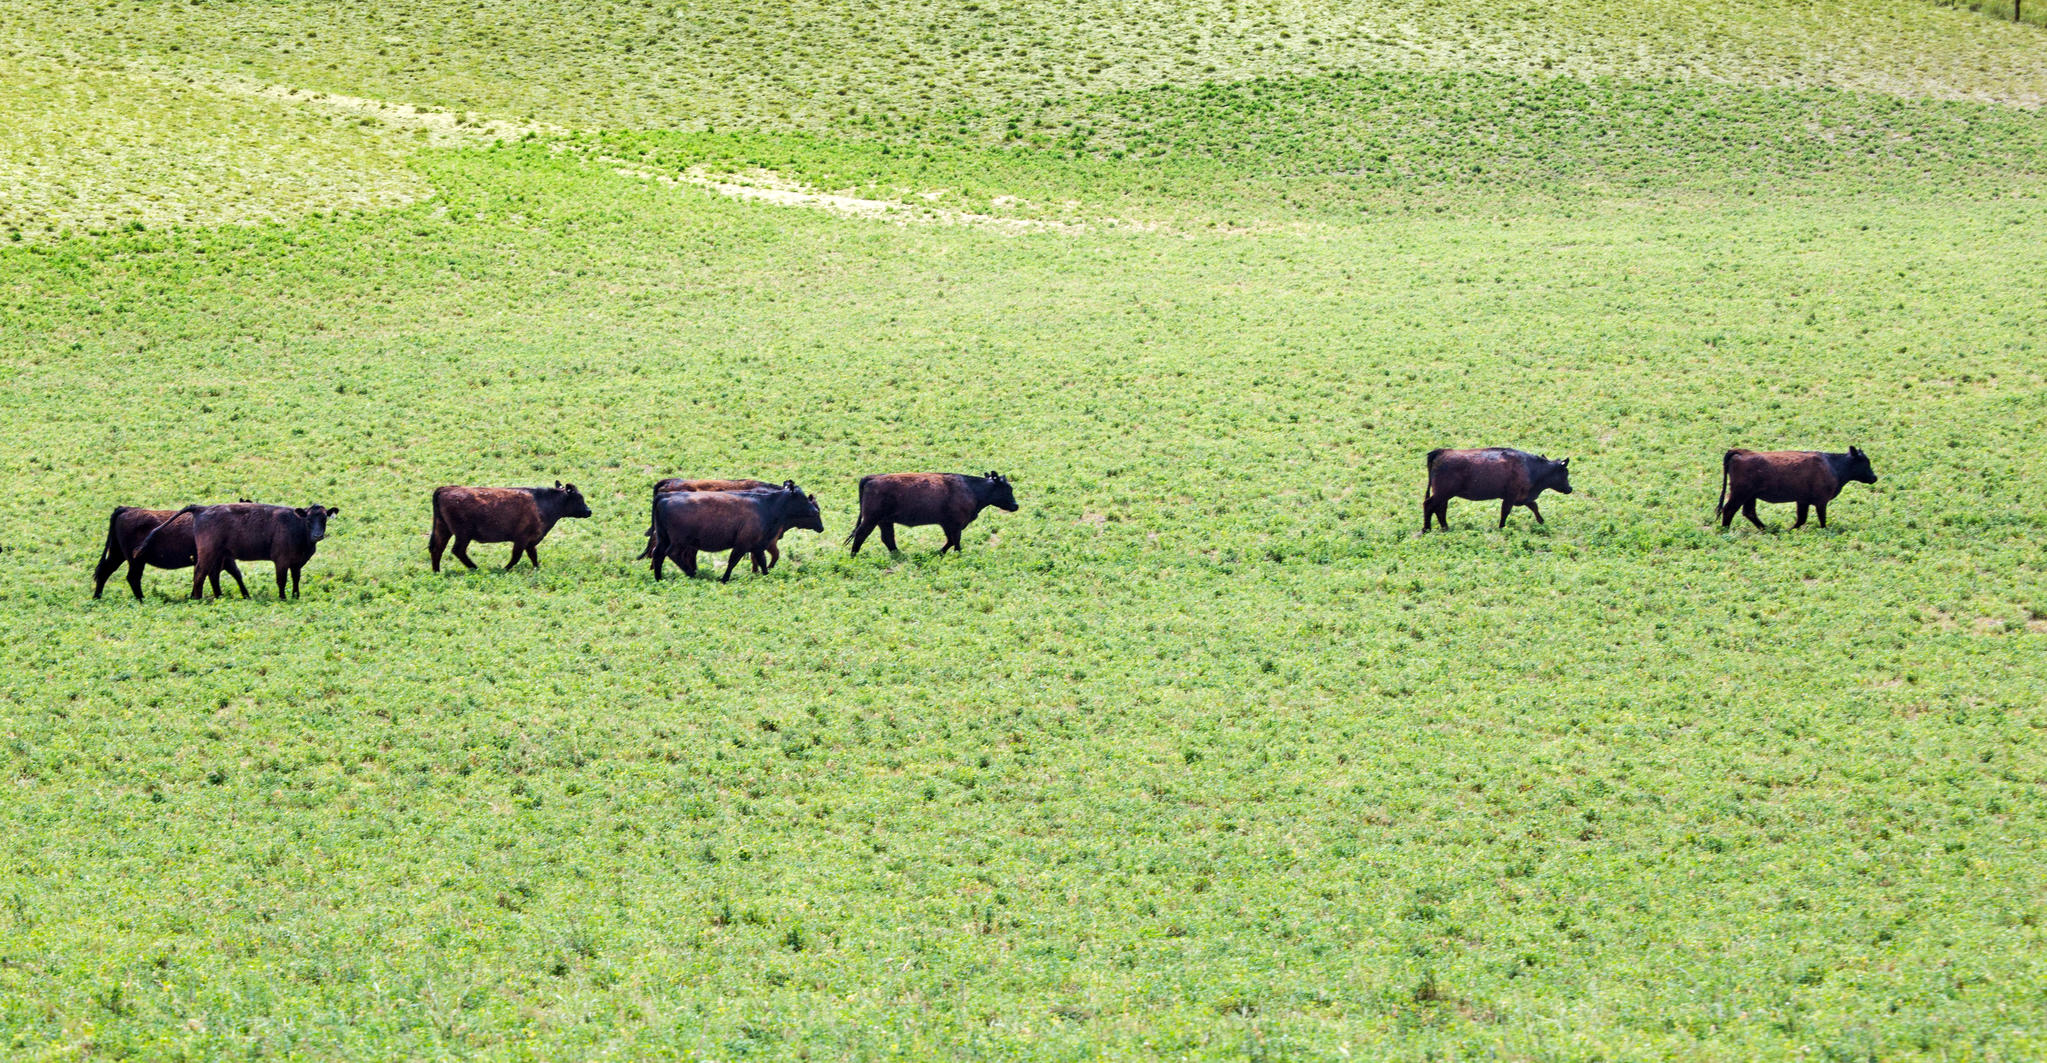 gras gevoerden runderen op gras